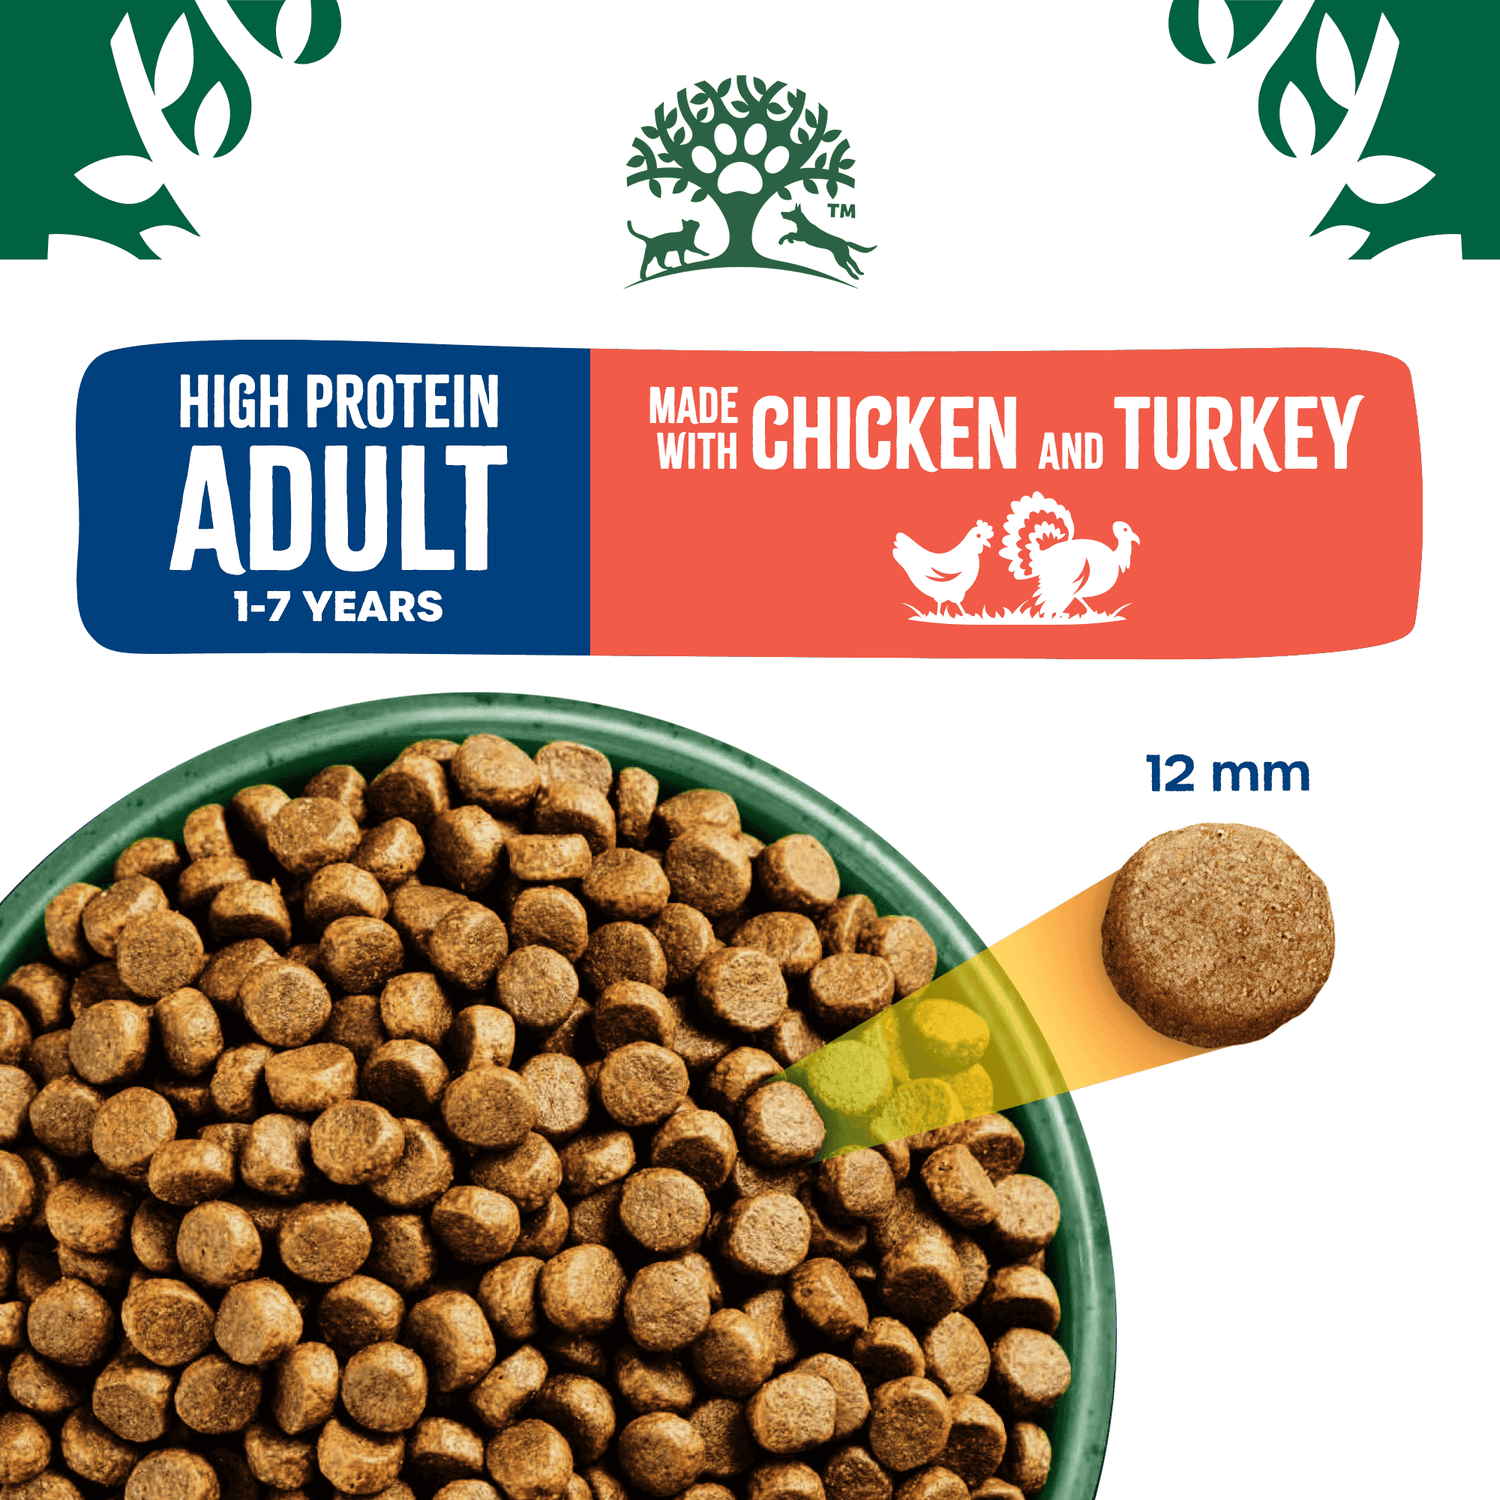 Adult High Protein Chicken & Turkey Dog Food - James Wellbeloved UK